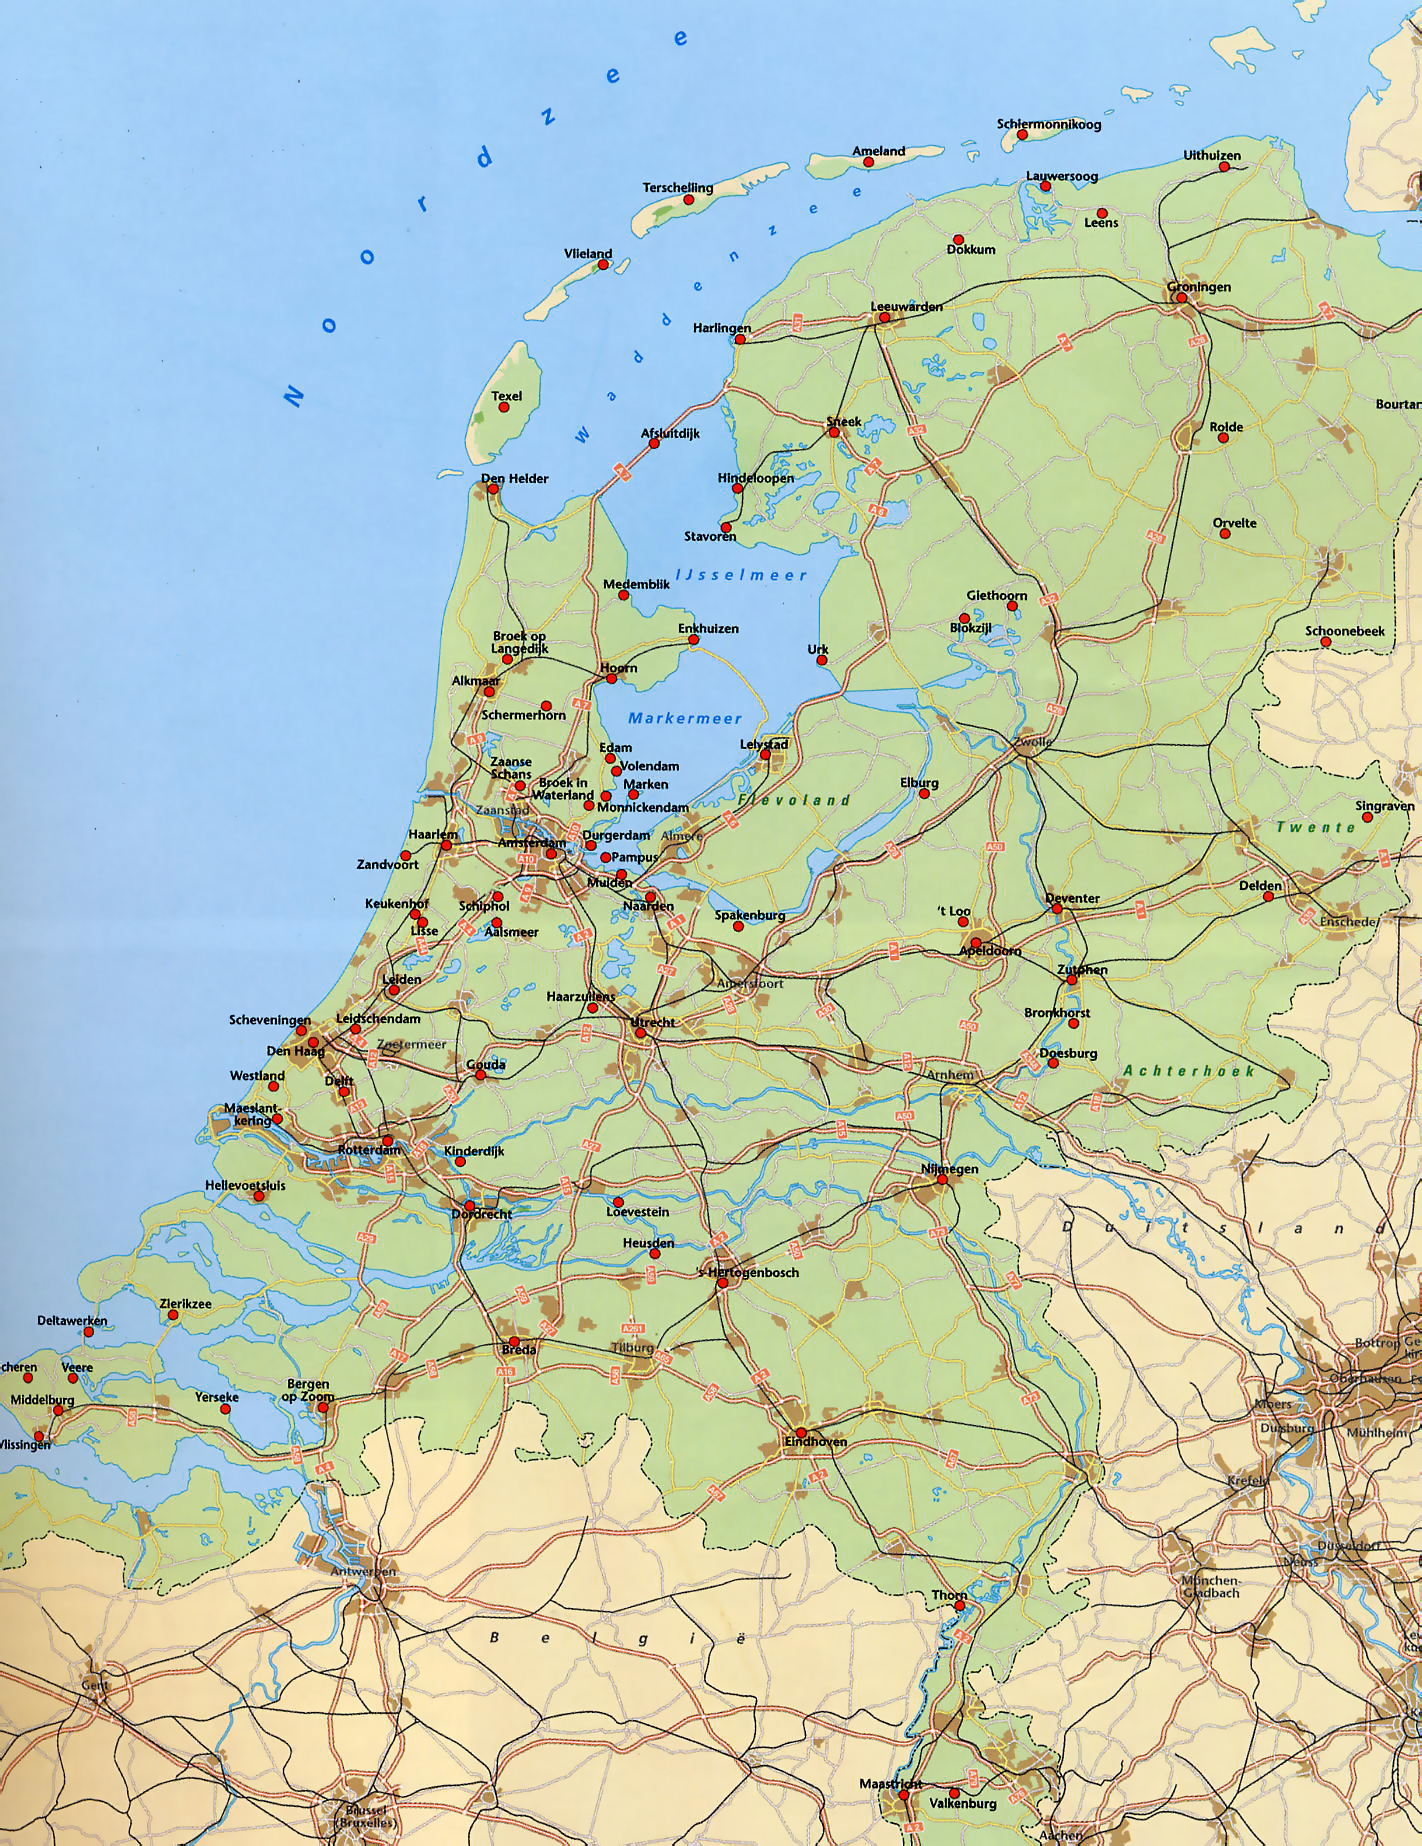 Grande mapa de los Países Bajos con carreteras, ferrocarriles y grandes